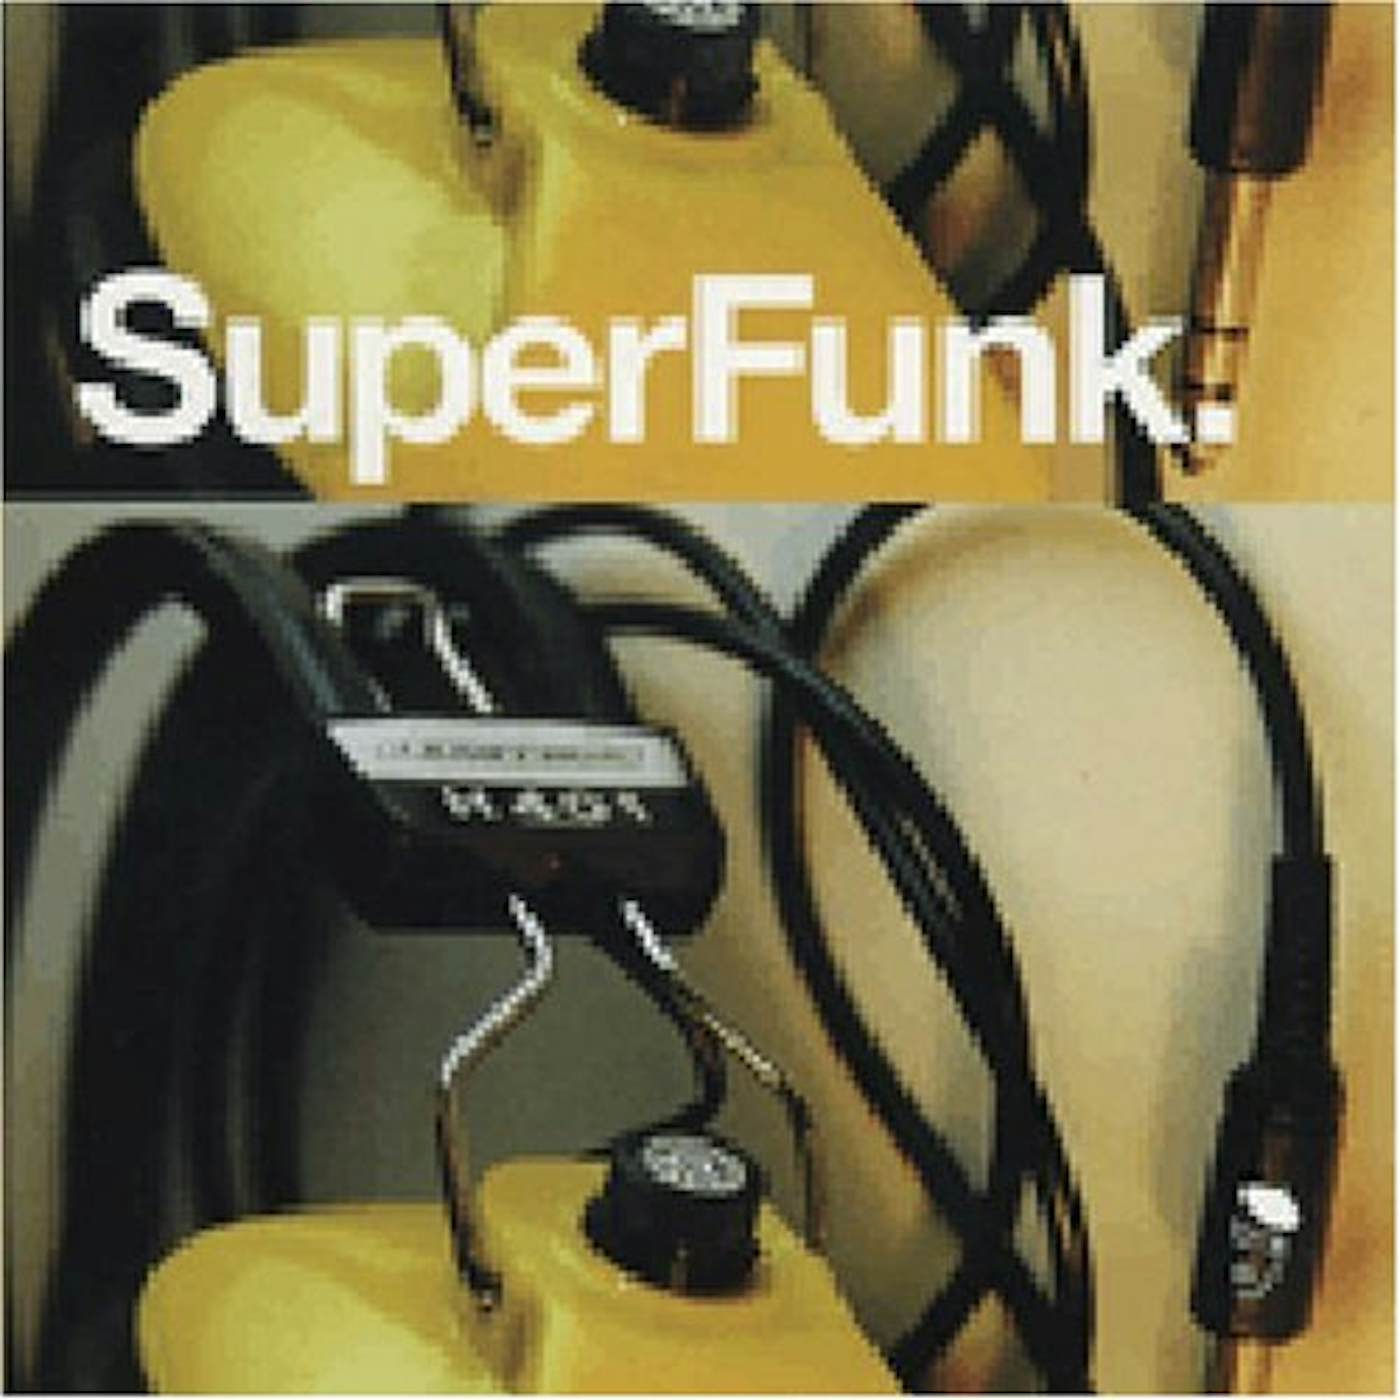 SUPER FUNK / VARIOUS Vinyl Record